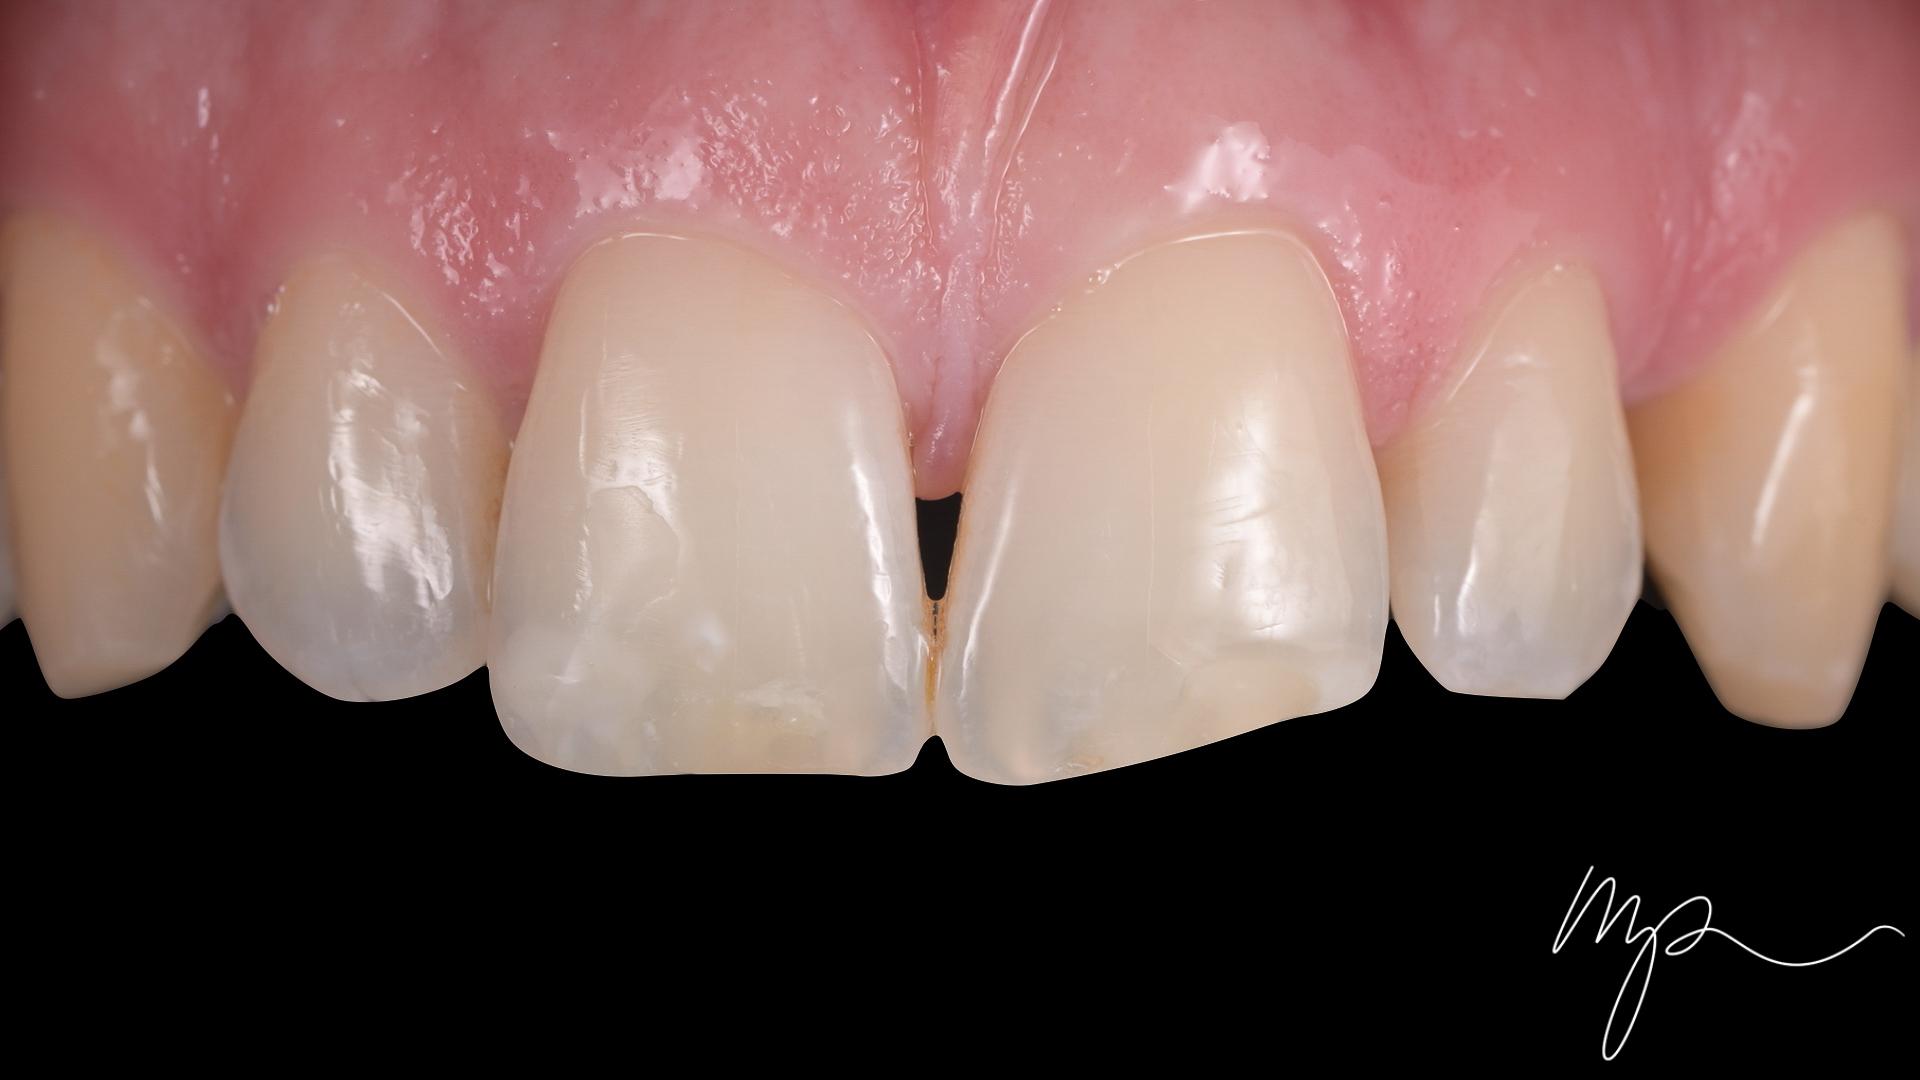 Dr Marin Pomperski - Chirurgien Dentiste - composites Avant